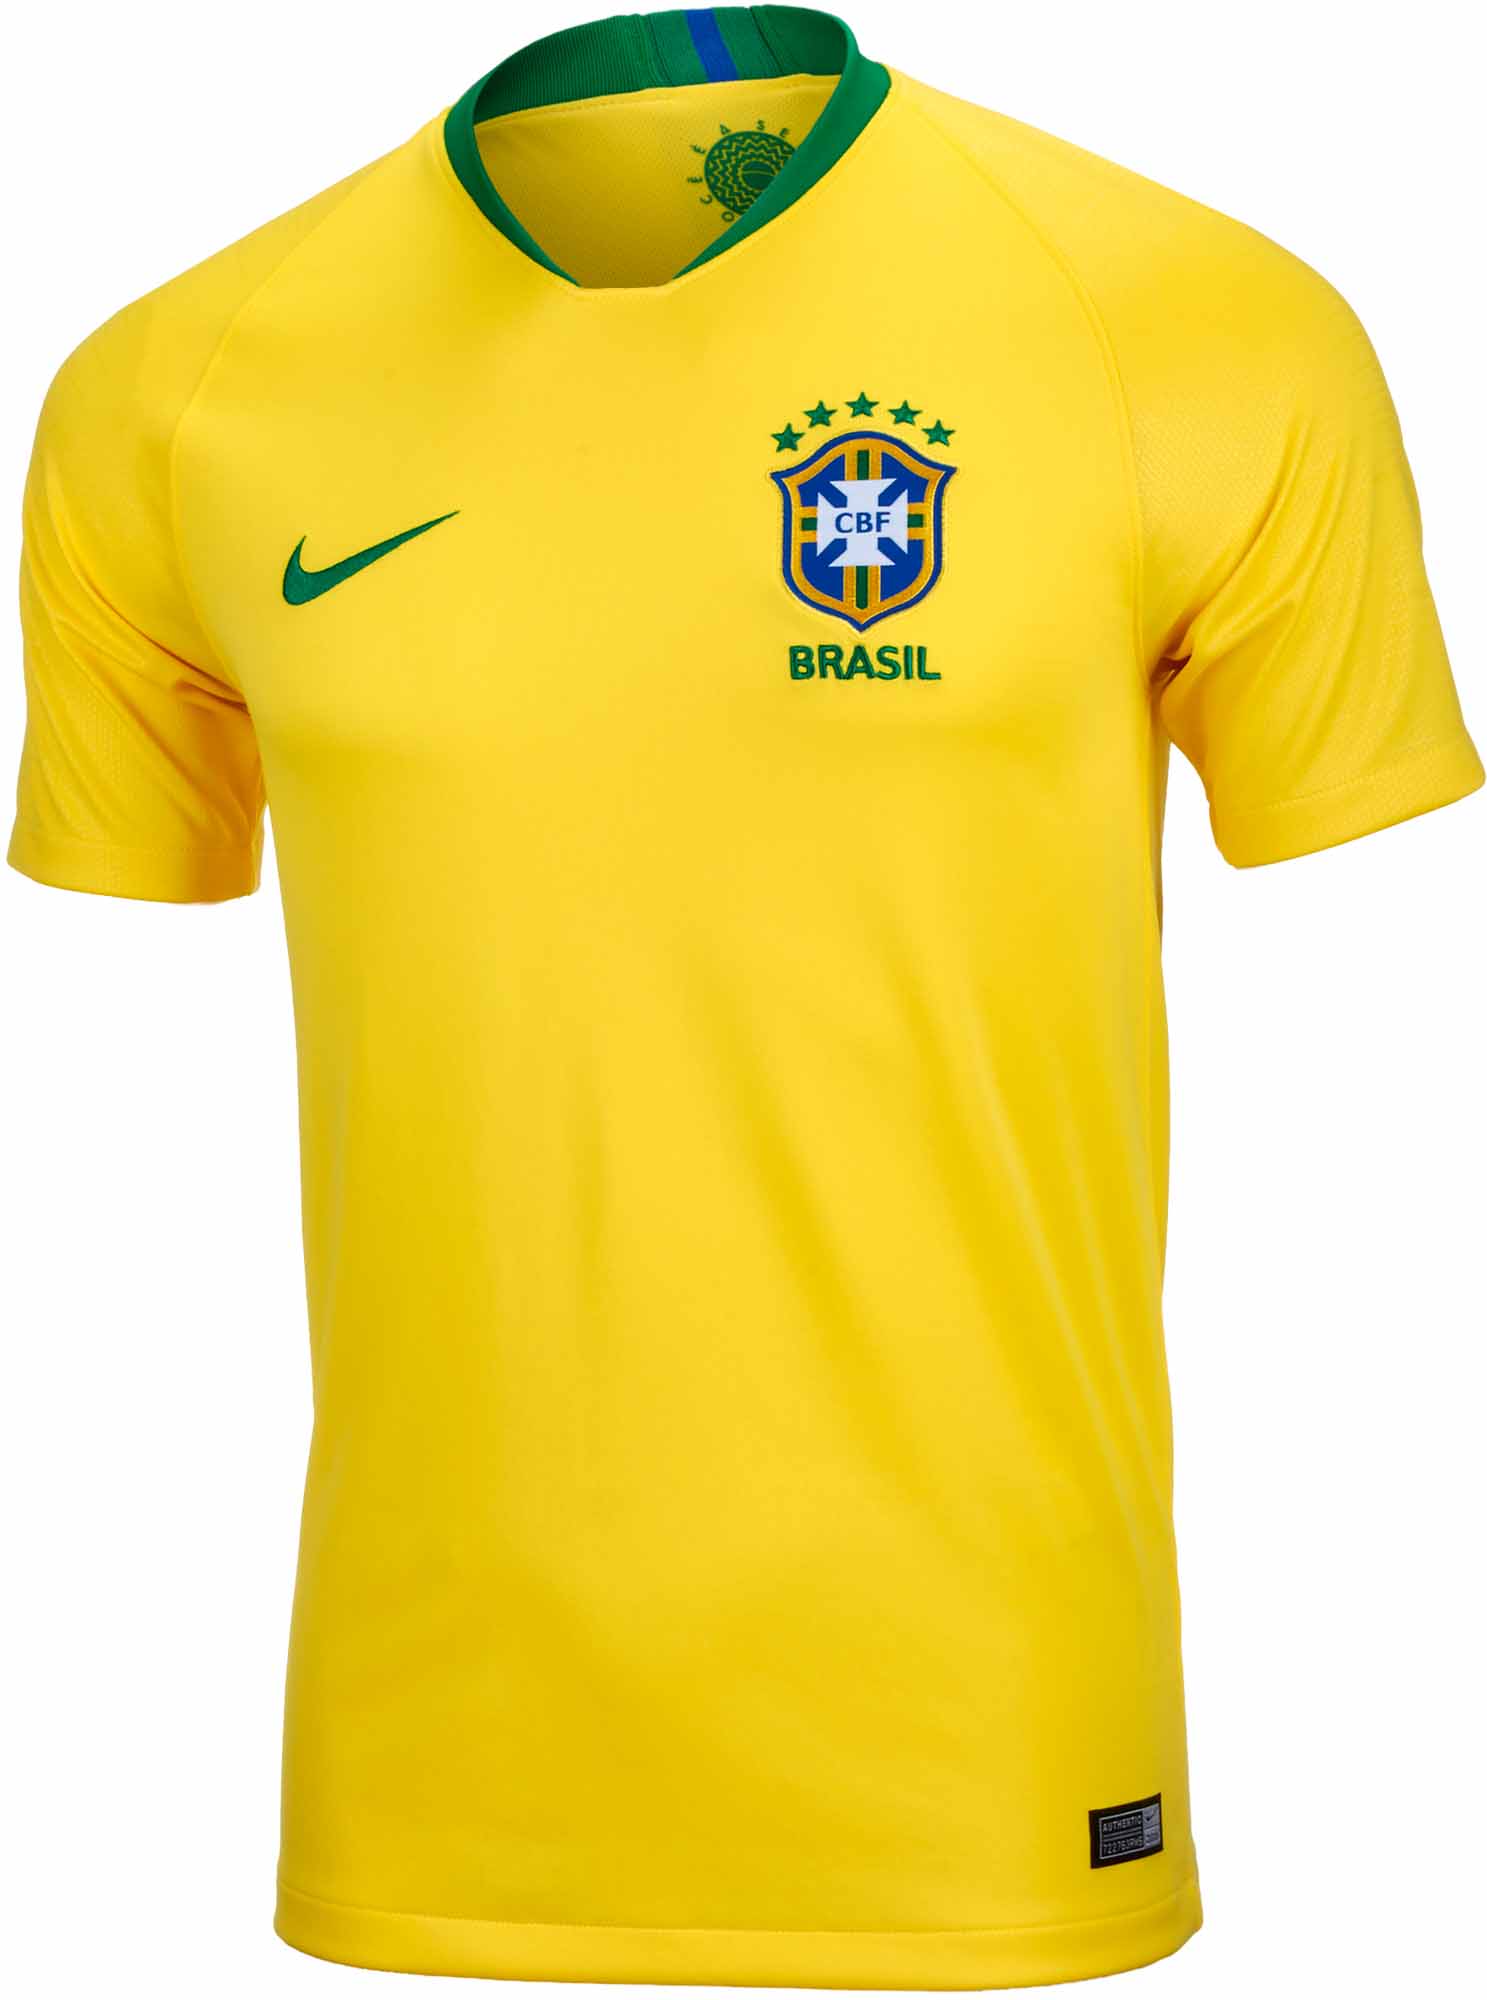 brazil youth soccer jersey